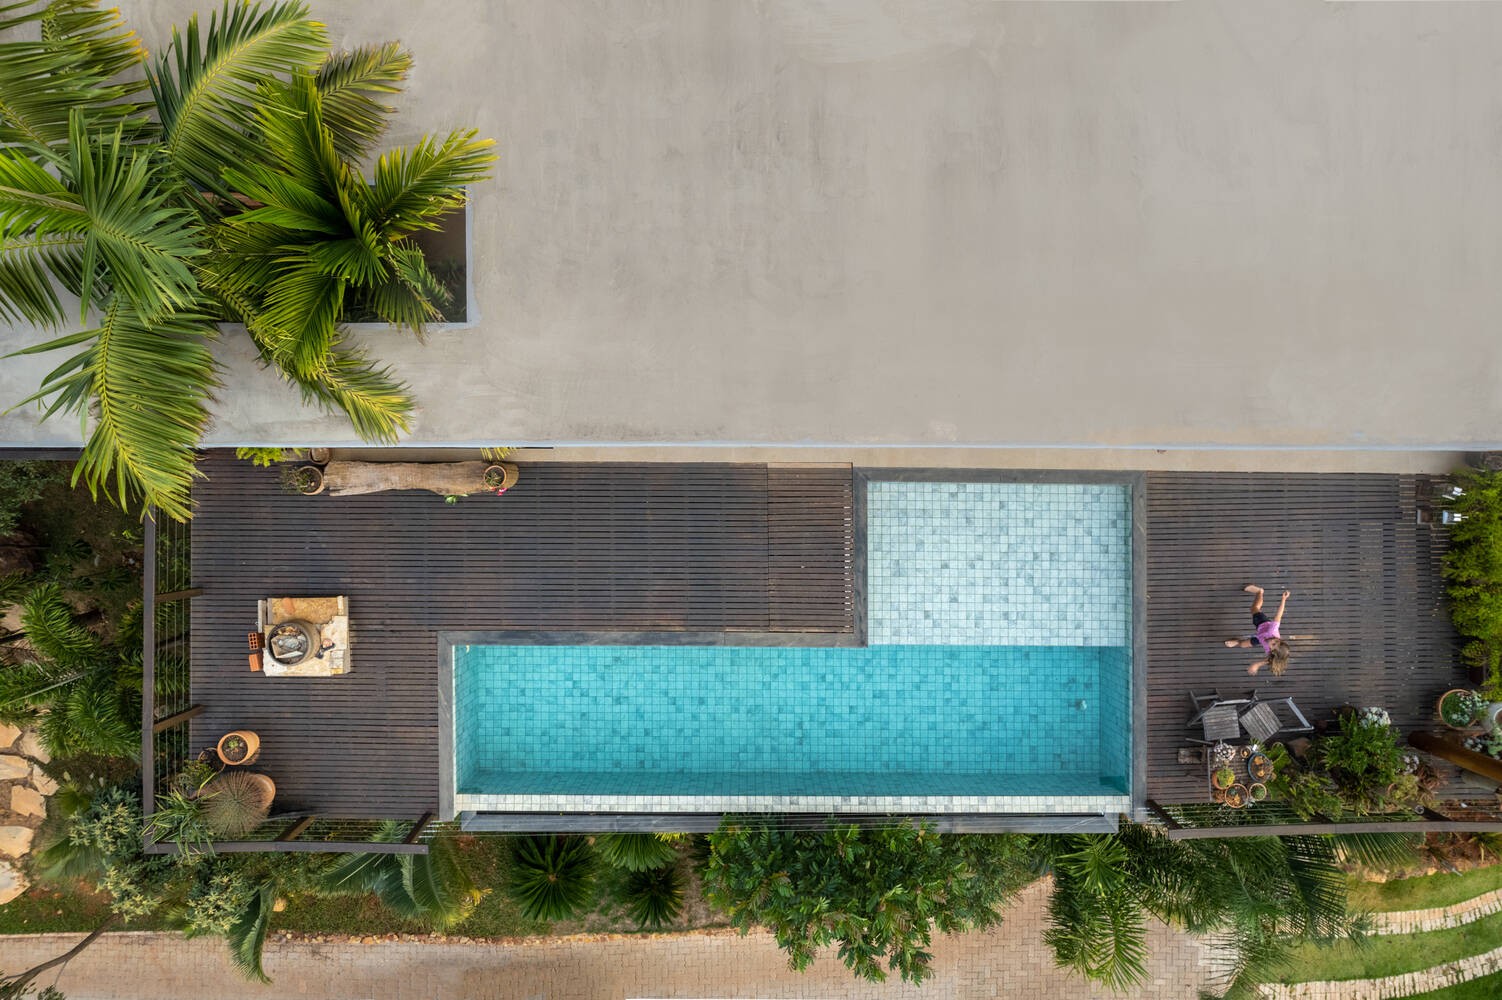 
Bể bơi được thiết kế hình chữ L, xung quanh là khu vực nghỉ ngơi, tắm nắng và cây hàng cây xanh
